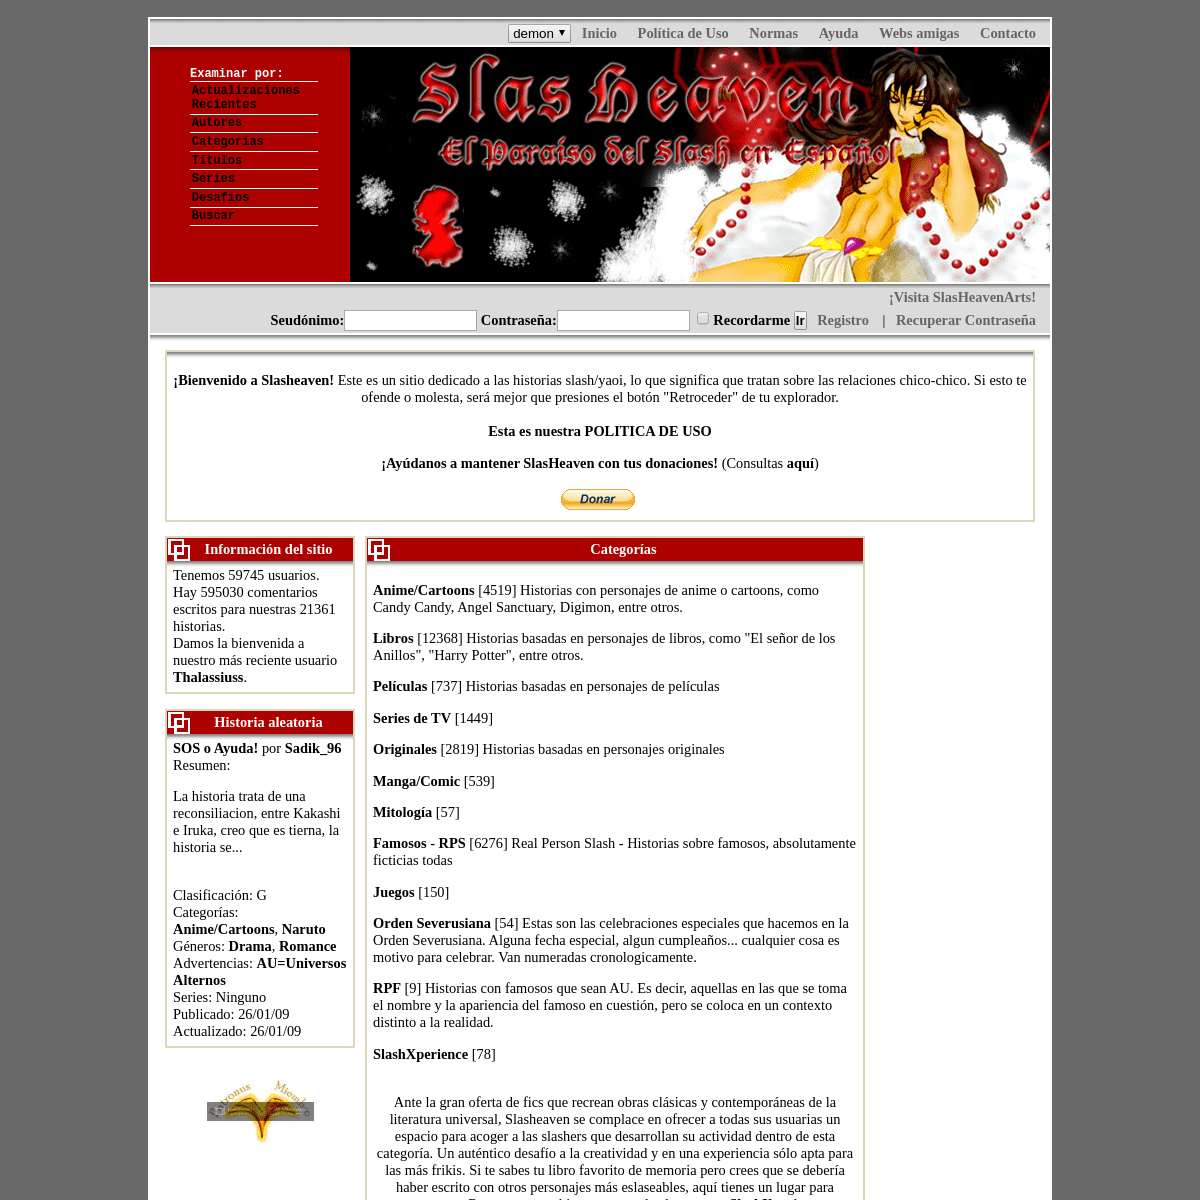 A complete backup of slasheaven.com